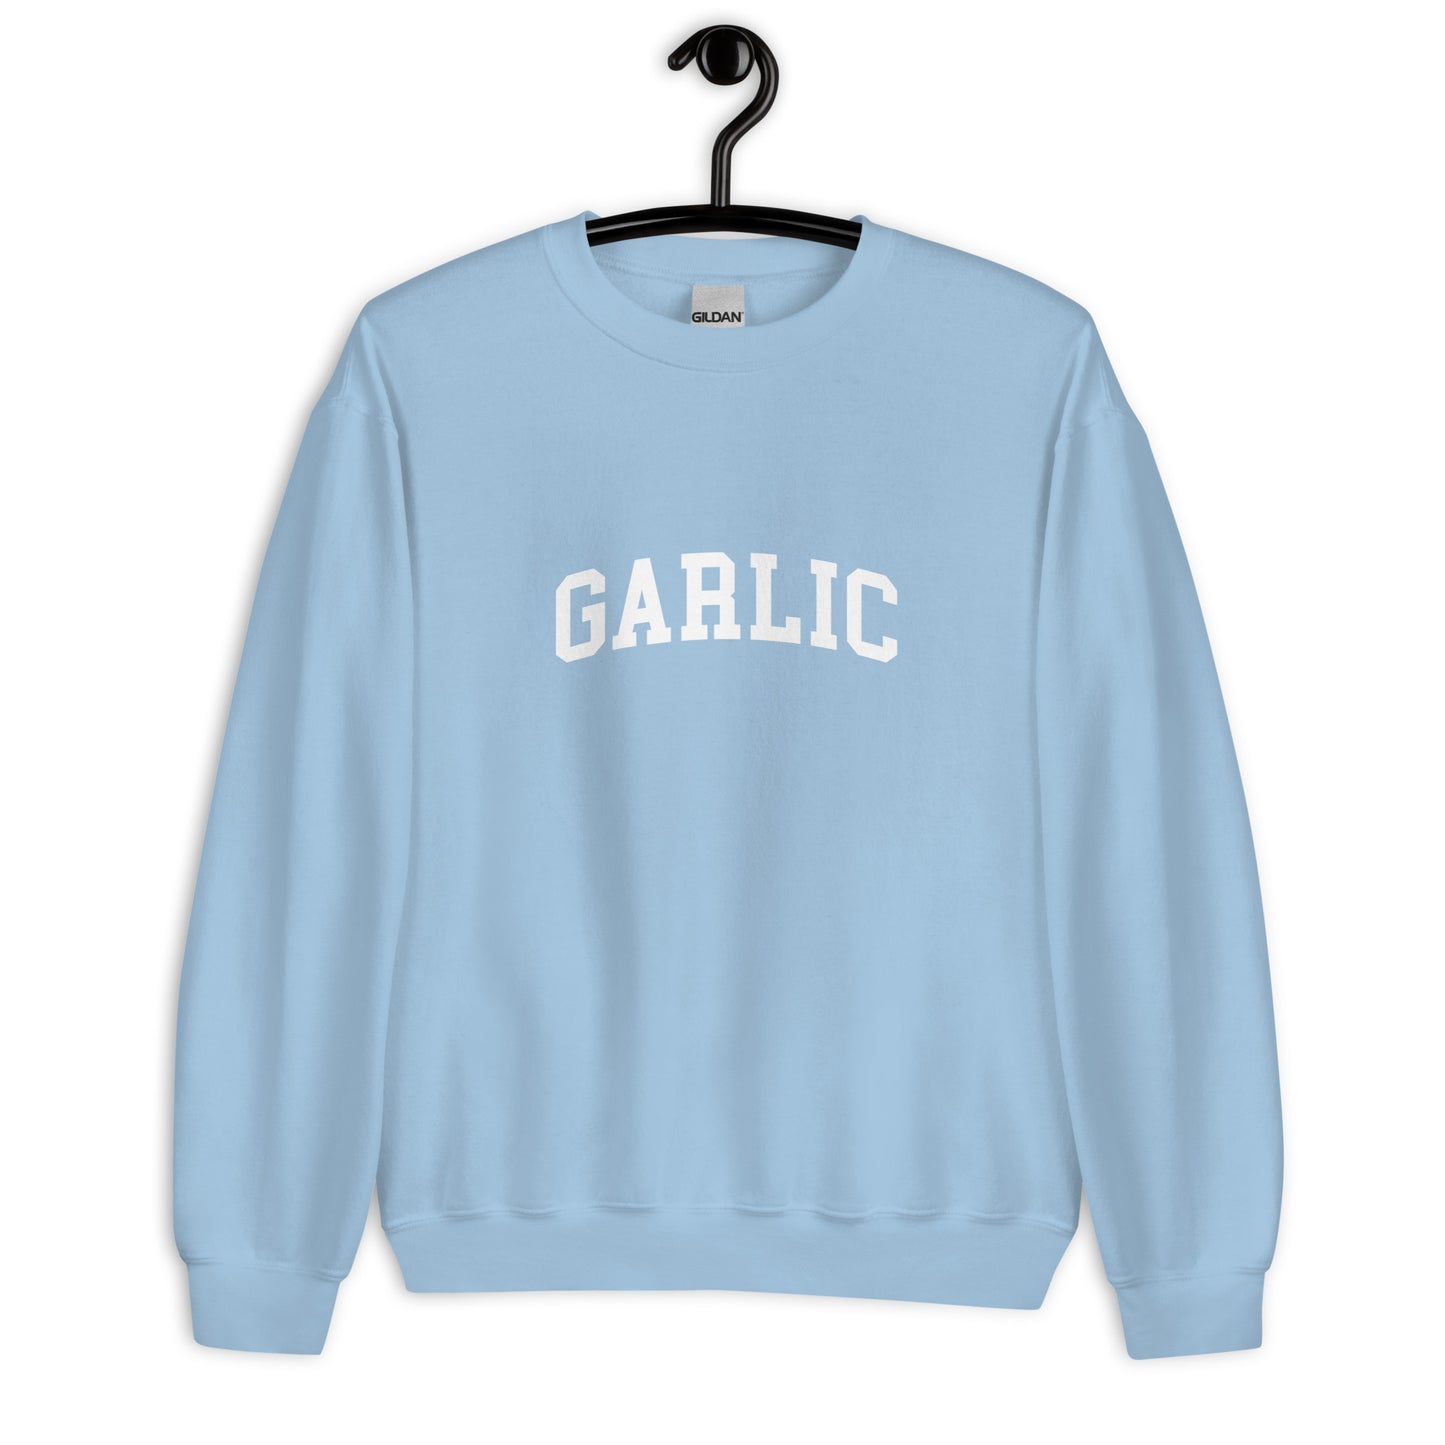 Garlic Sweatshirt - Arched Font